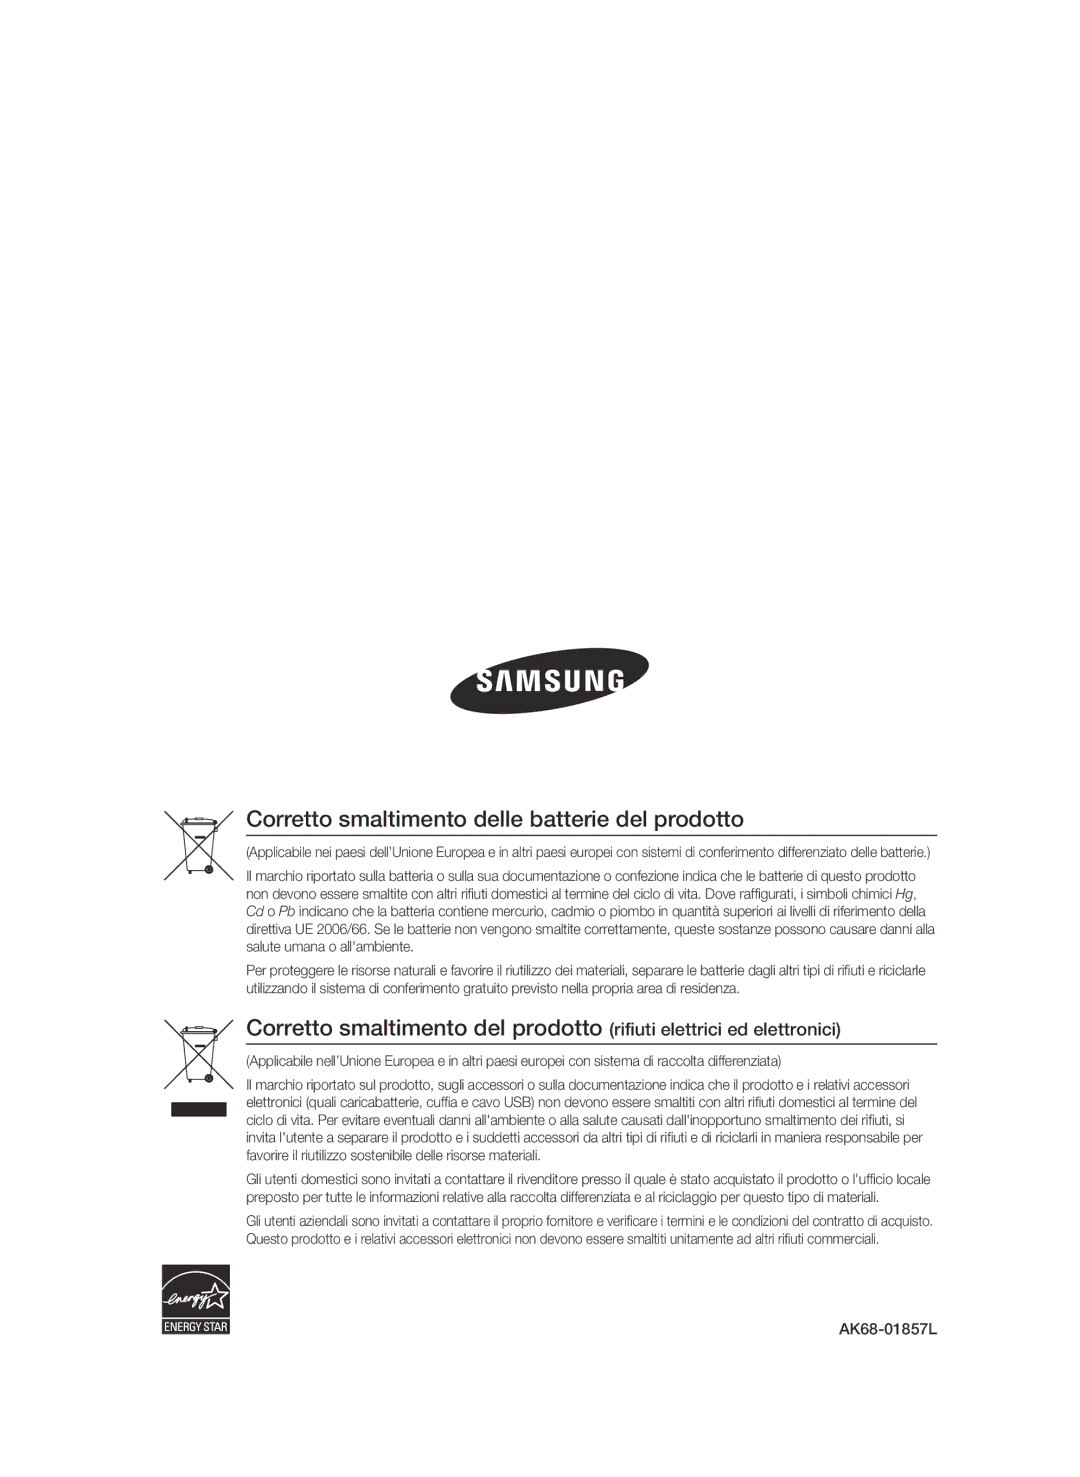 Samsung BD-C7500/XEF, BD-C7500/EDC manual Corretto smaltimento delle batterie del prodotto 